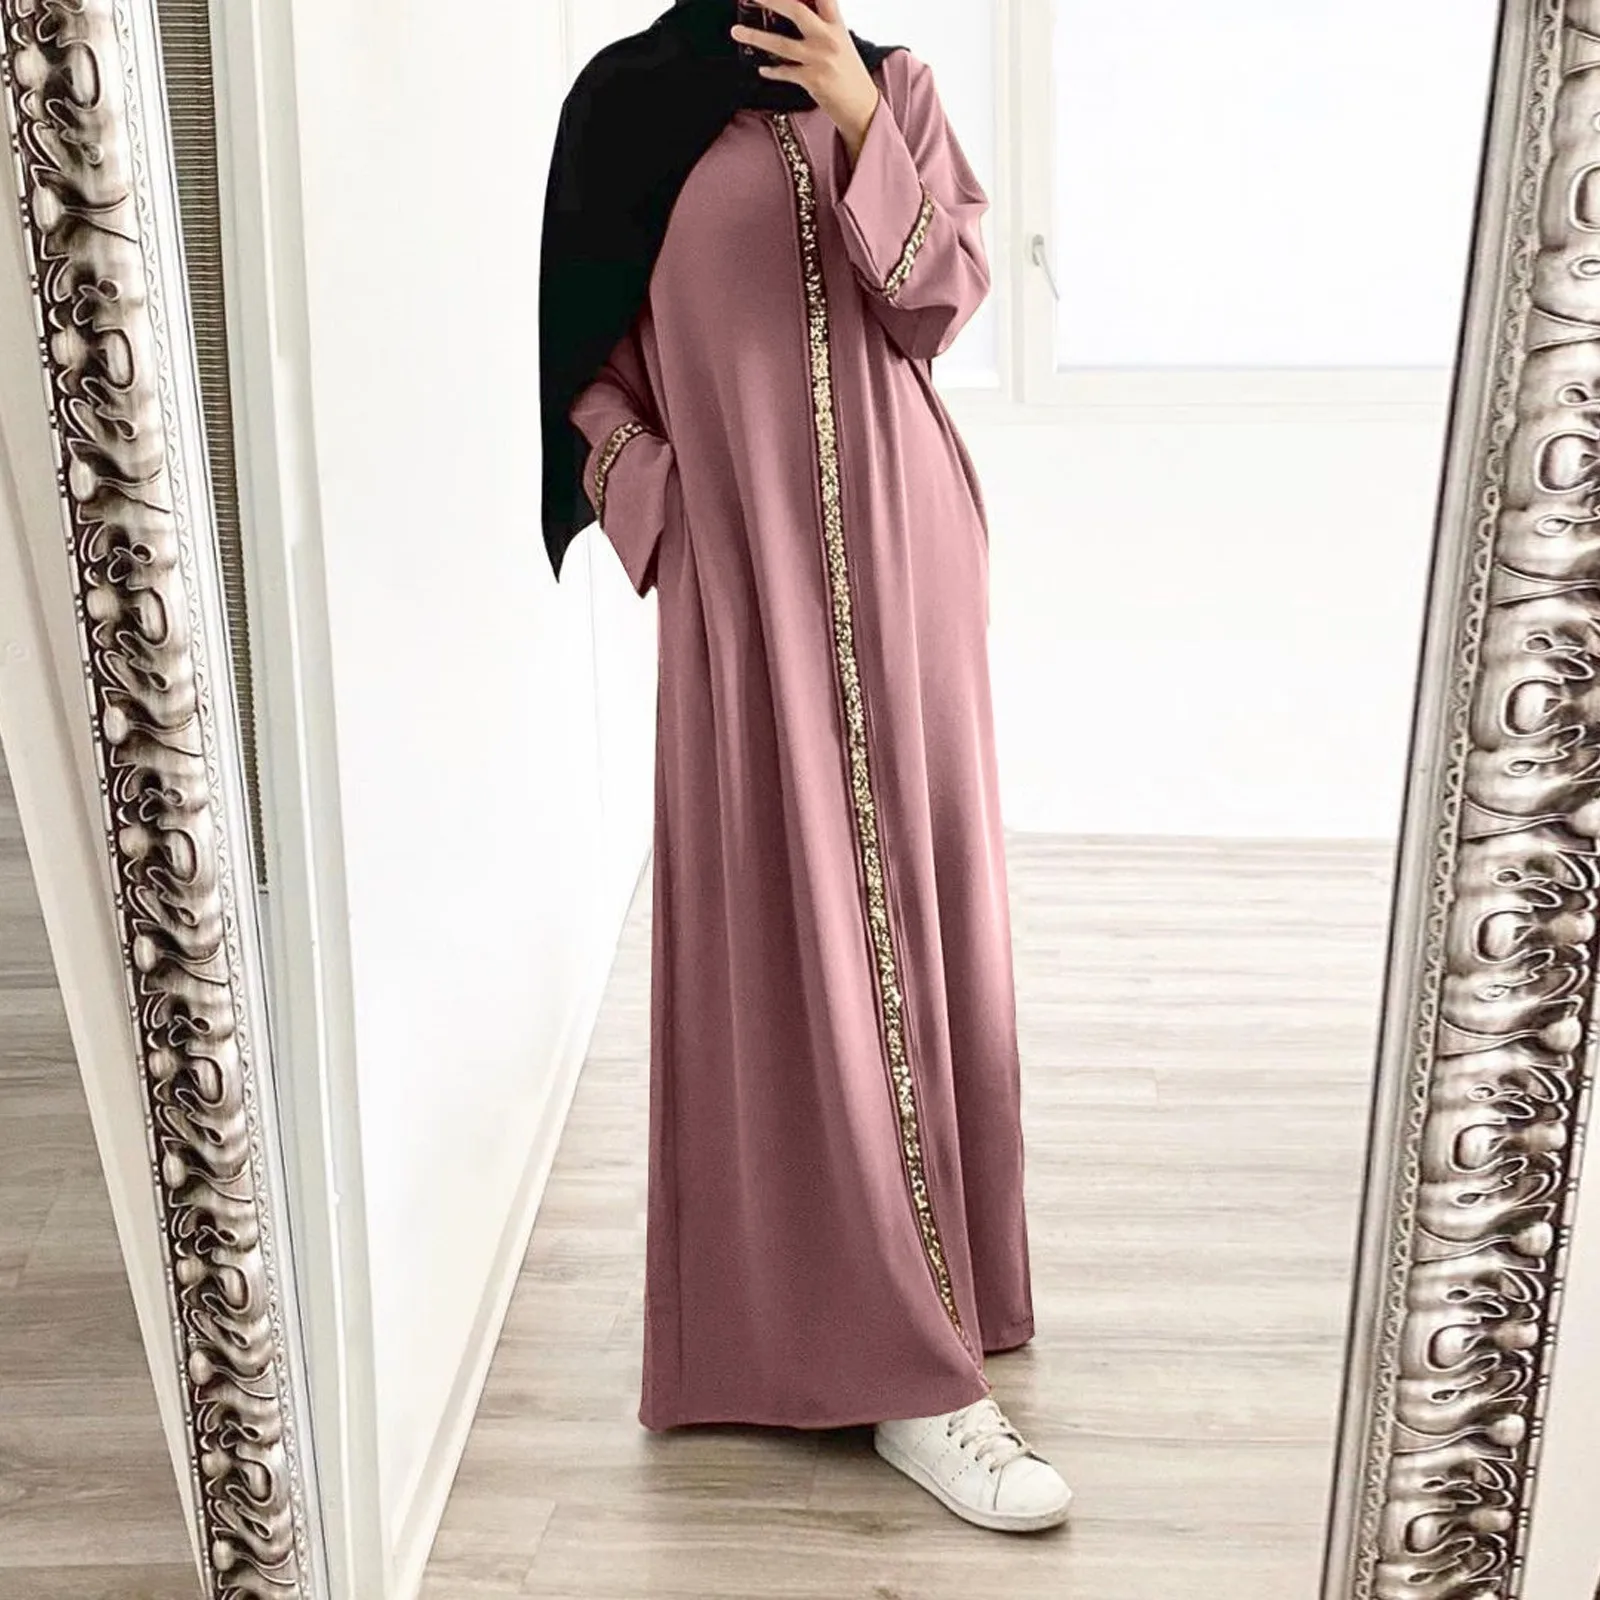 

Женское мусульманское длинное платье, кафтан с блестками, халат, Малайзия, Дубай, арабский, мусульманский, абайя, мусульманская одежда, кафтан, элегантные платья макси со вставками